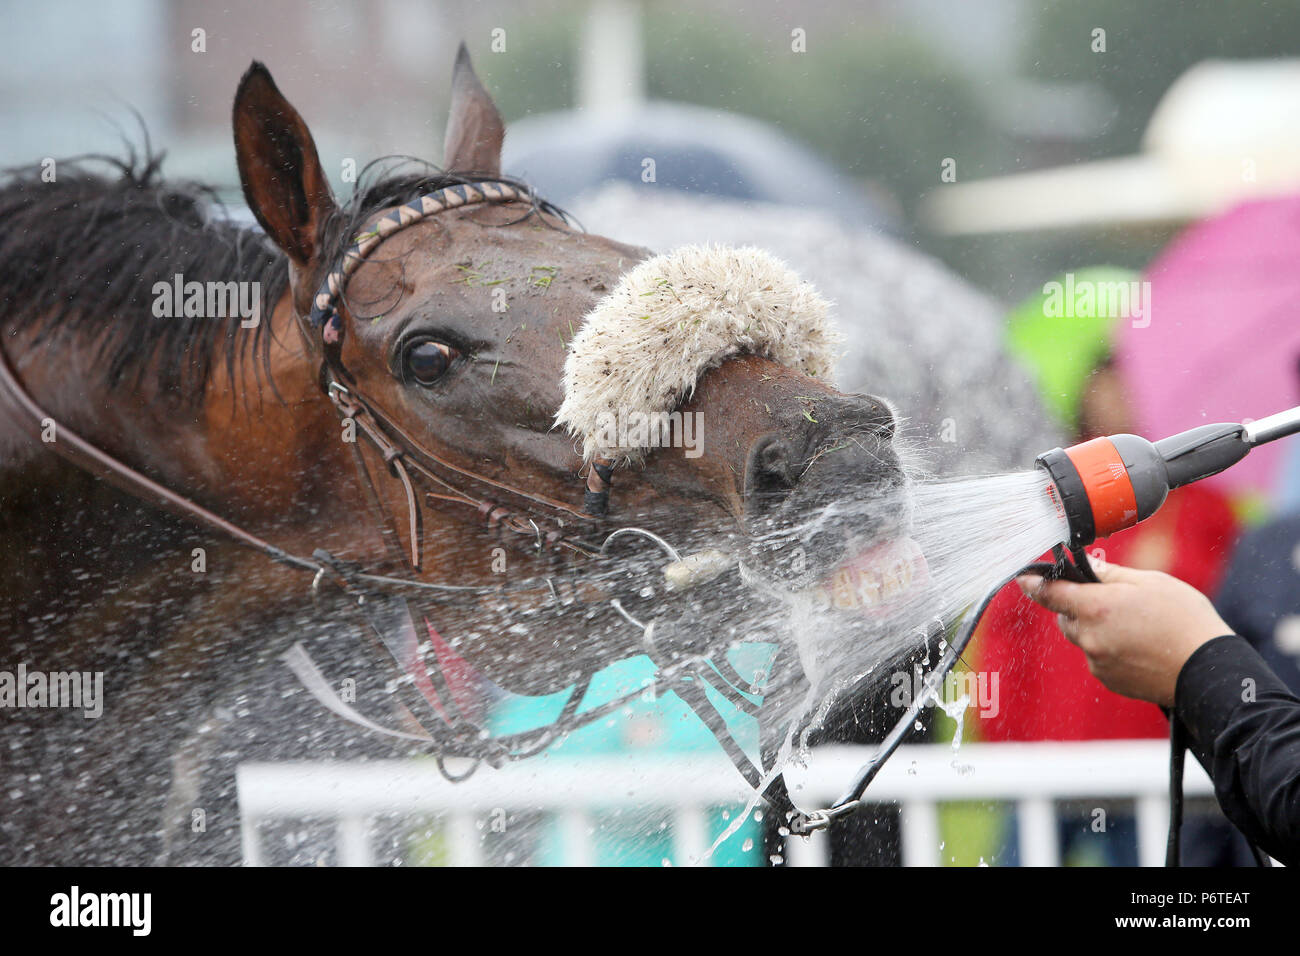 Hamburg, Pferd erhält Wasser aus dem Duschkopf Stockfoto